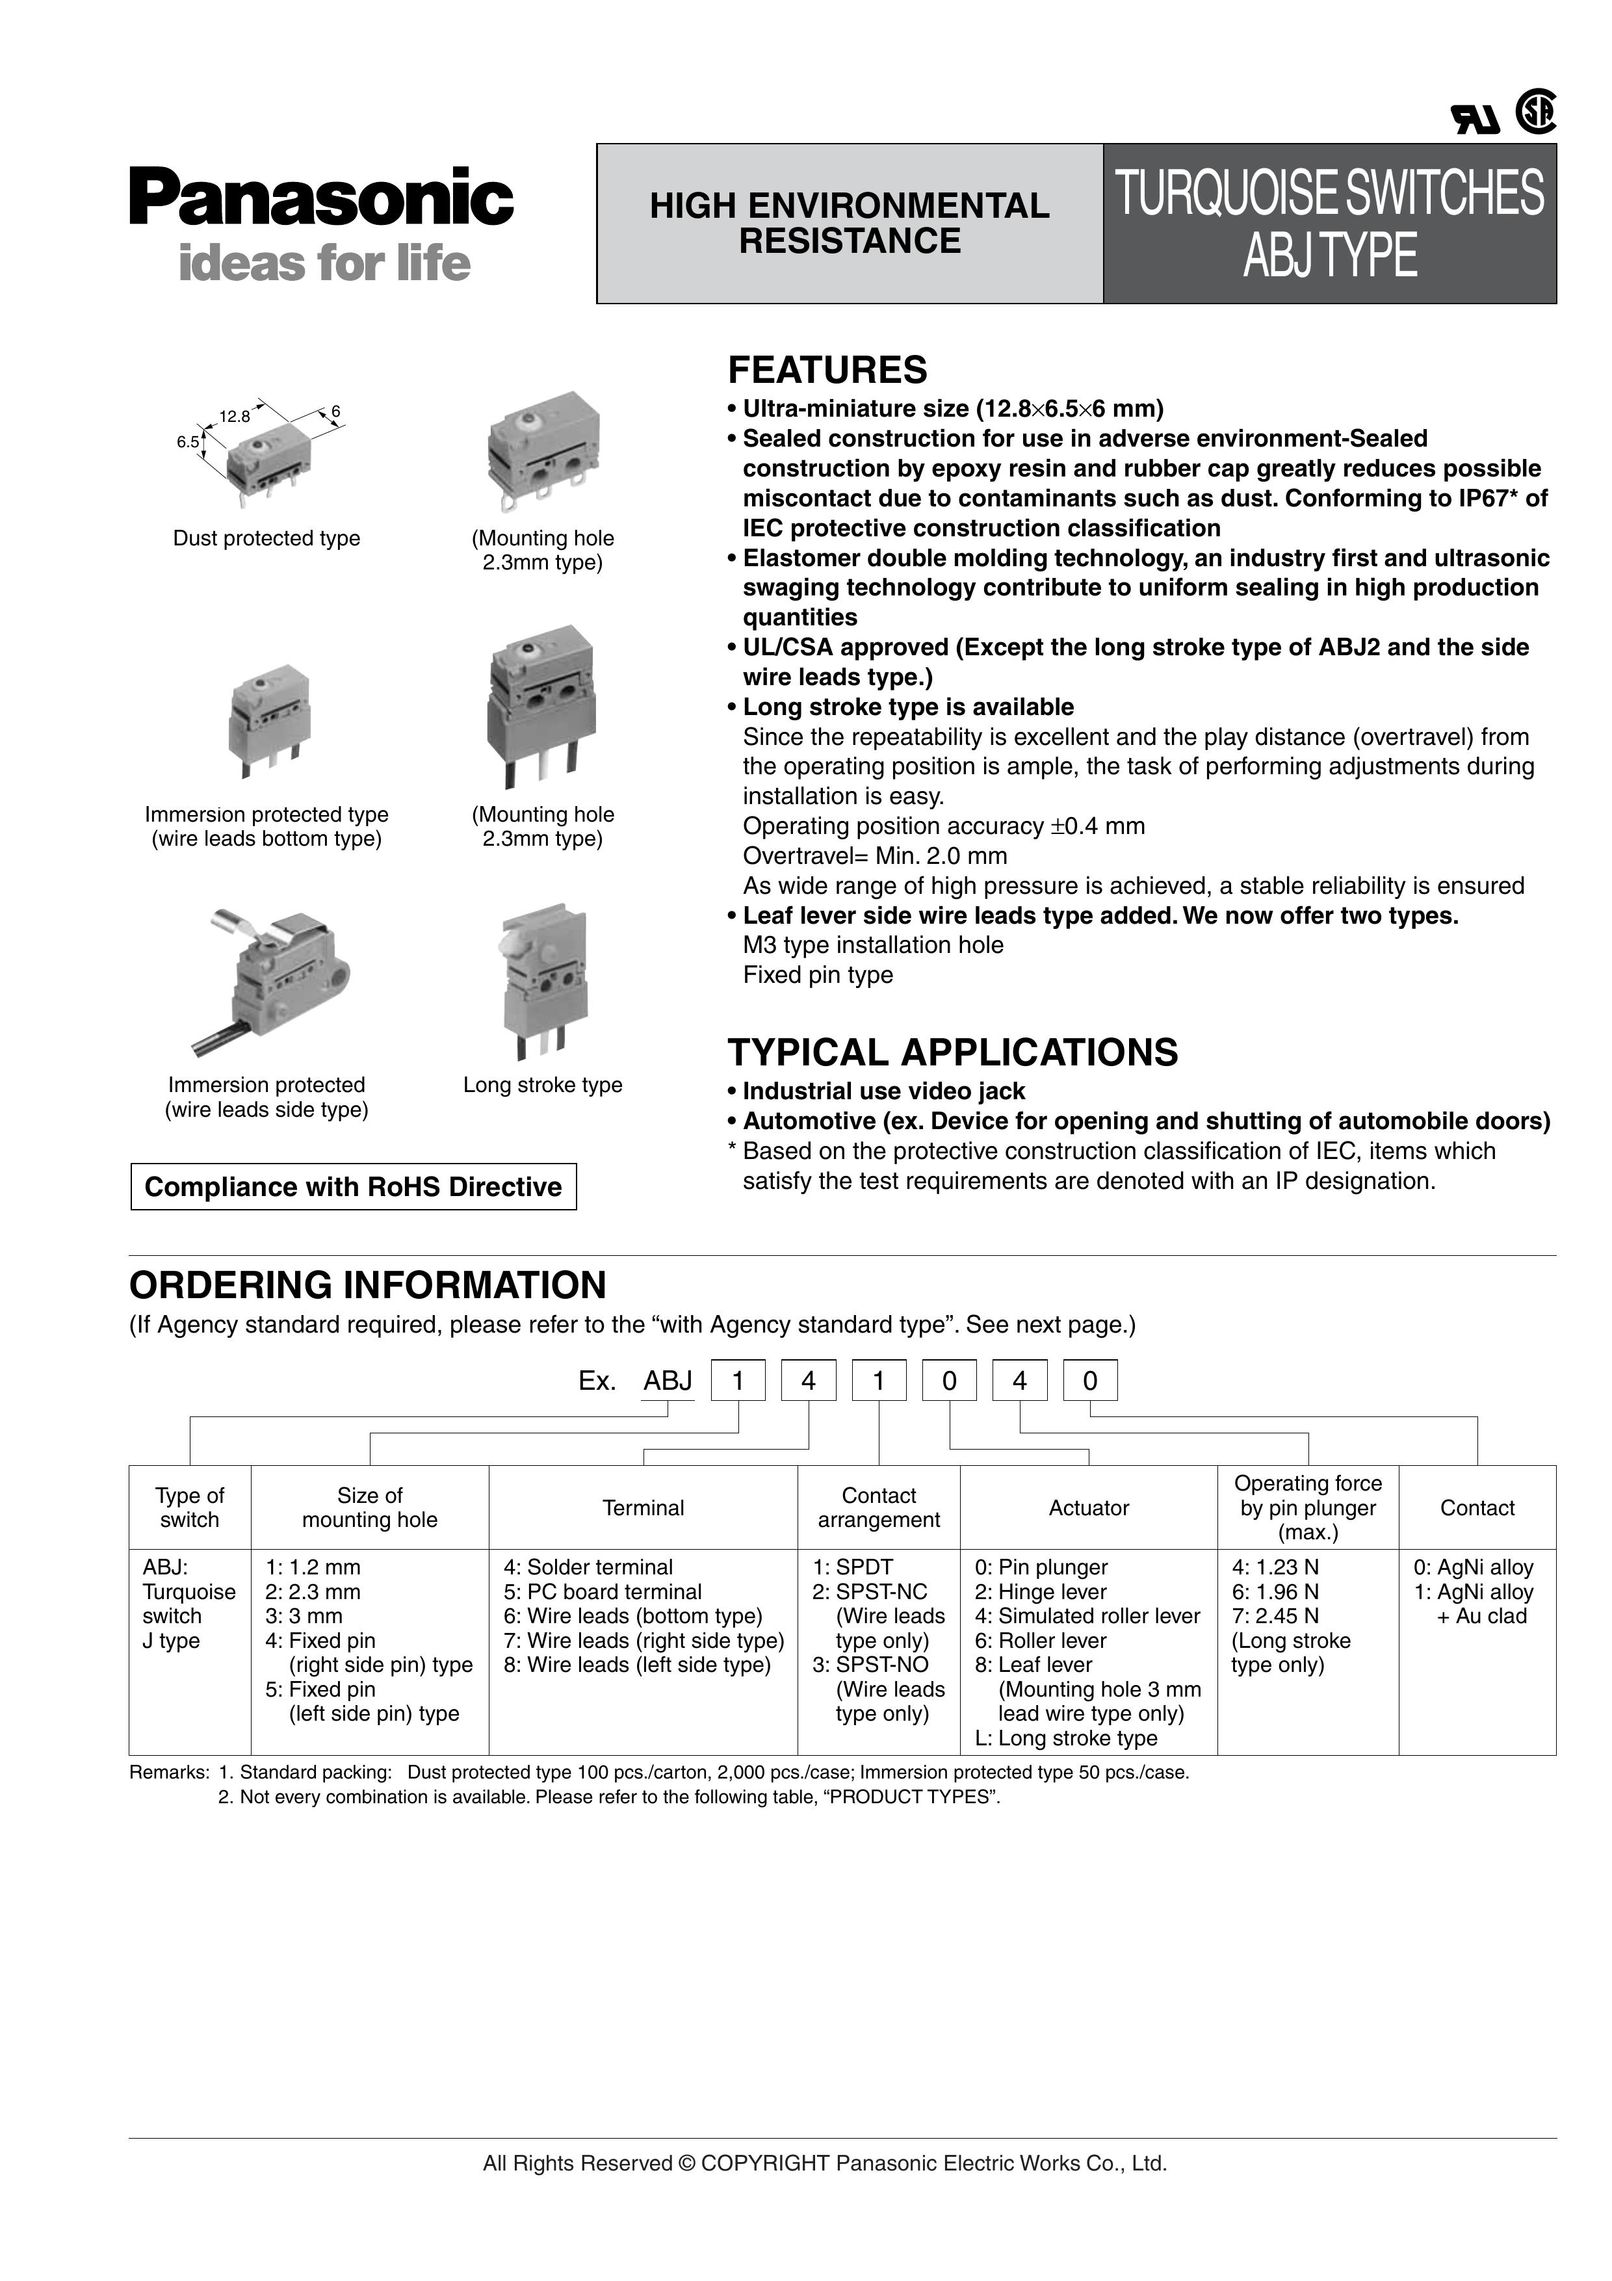 Panasonic ABJ Switch User Manual